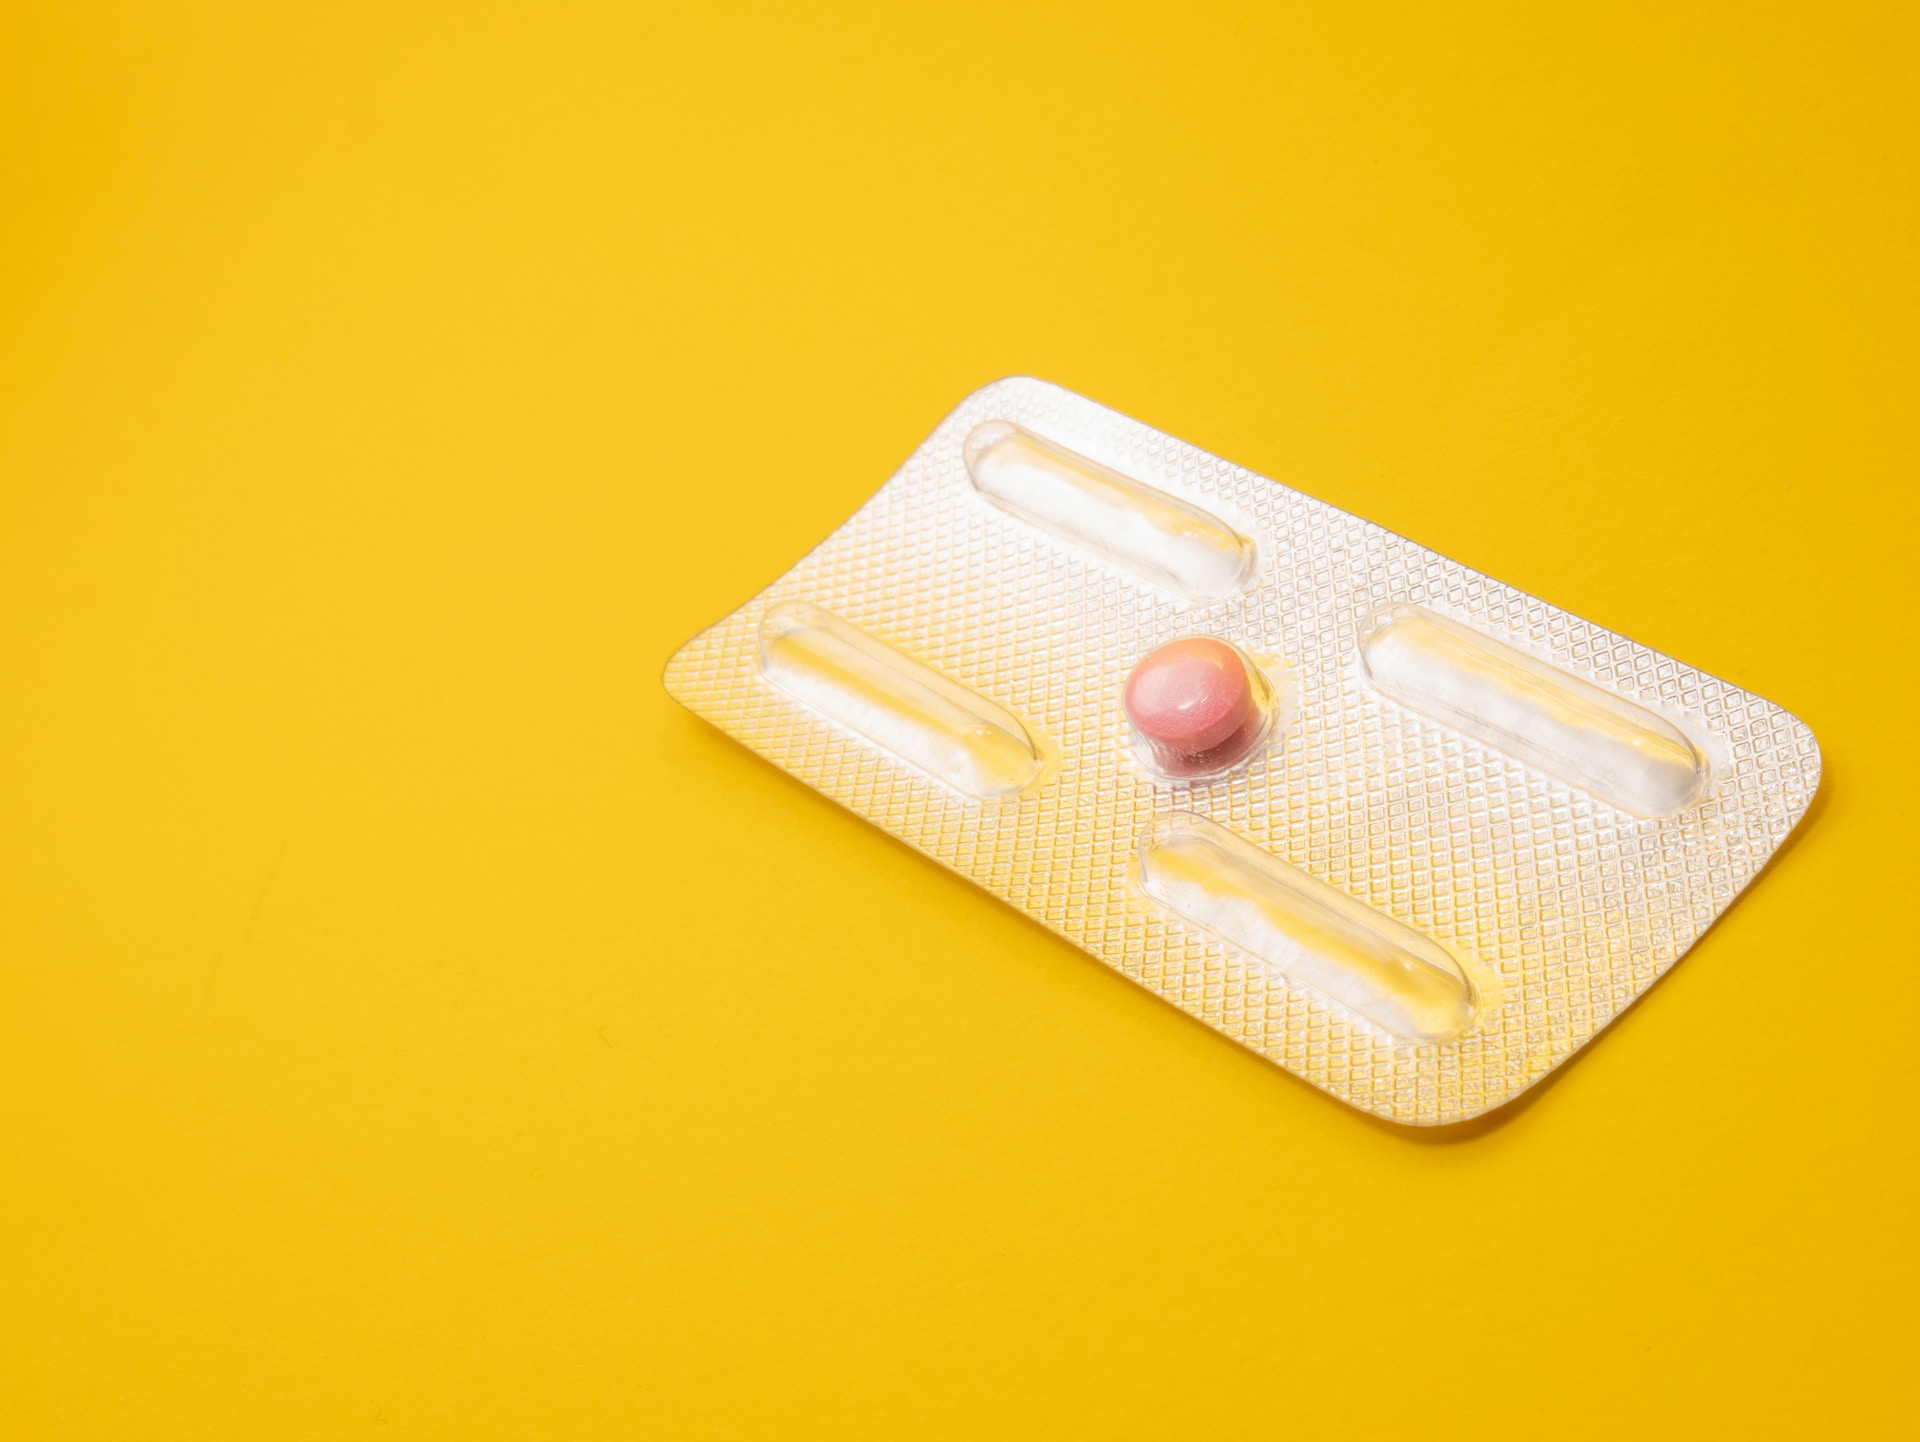 Comment l’arrêt de la pilule contraceptive affecte-t-il votre corps et votre santé ?